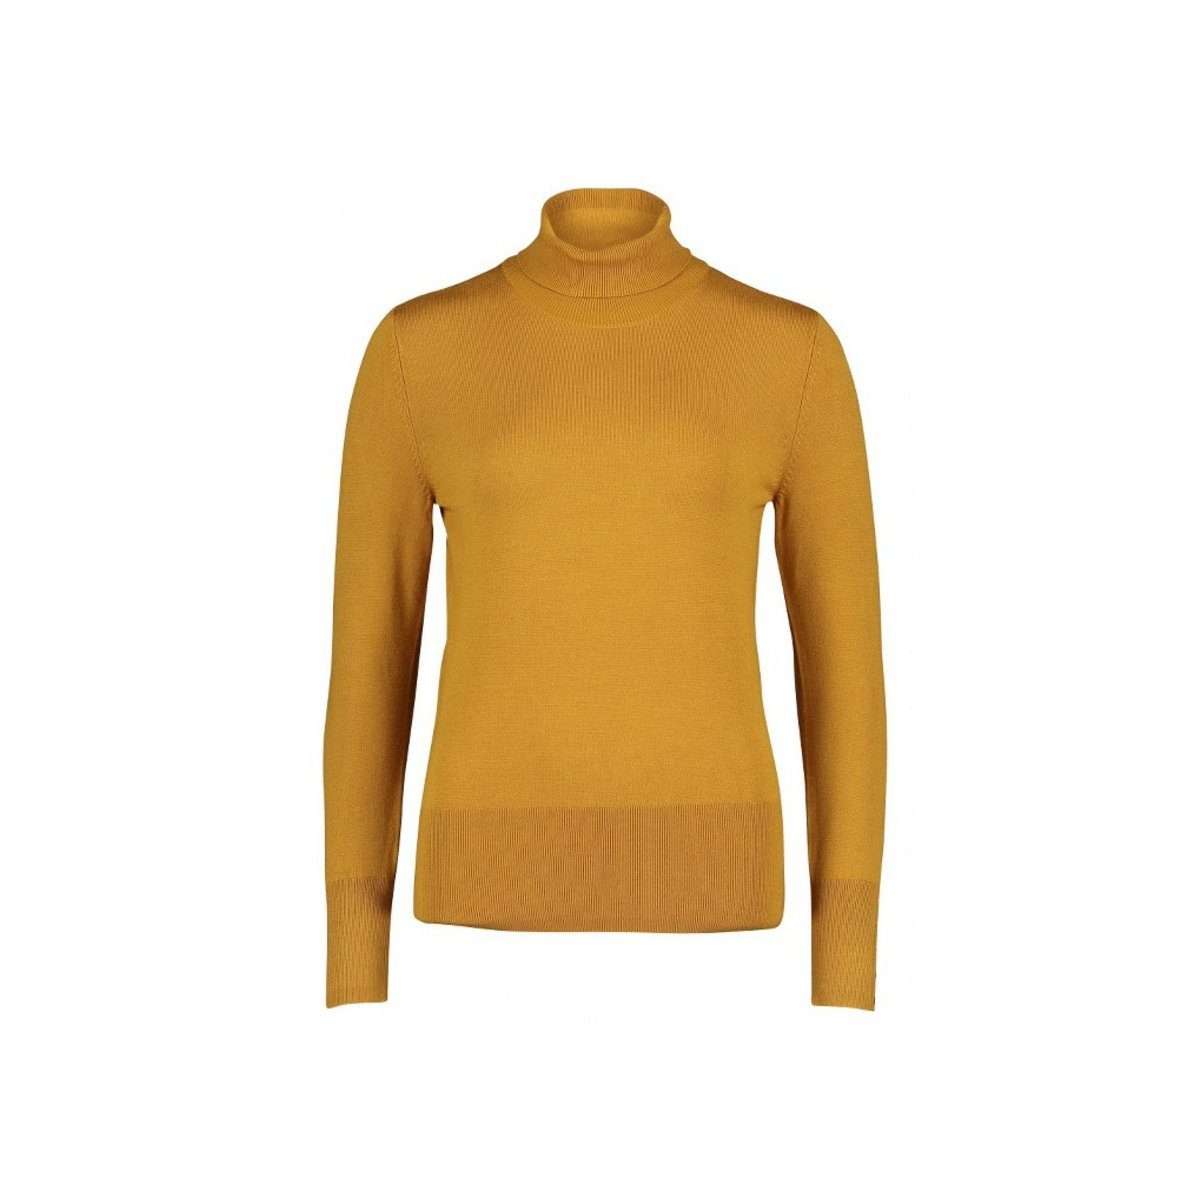 Вязаный свитер с длинным рукавом (1 шт.) воротник